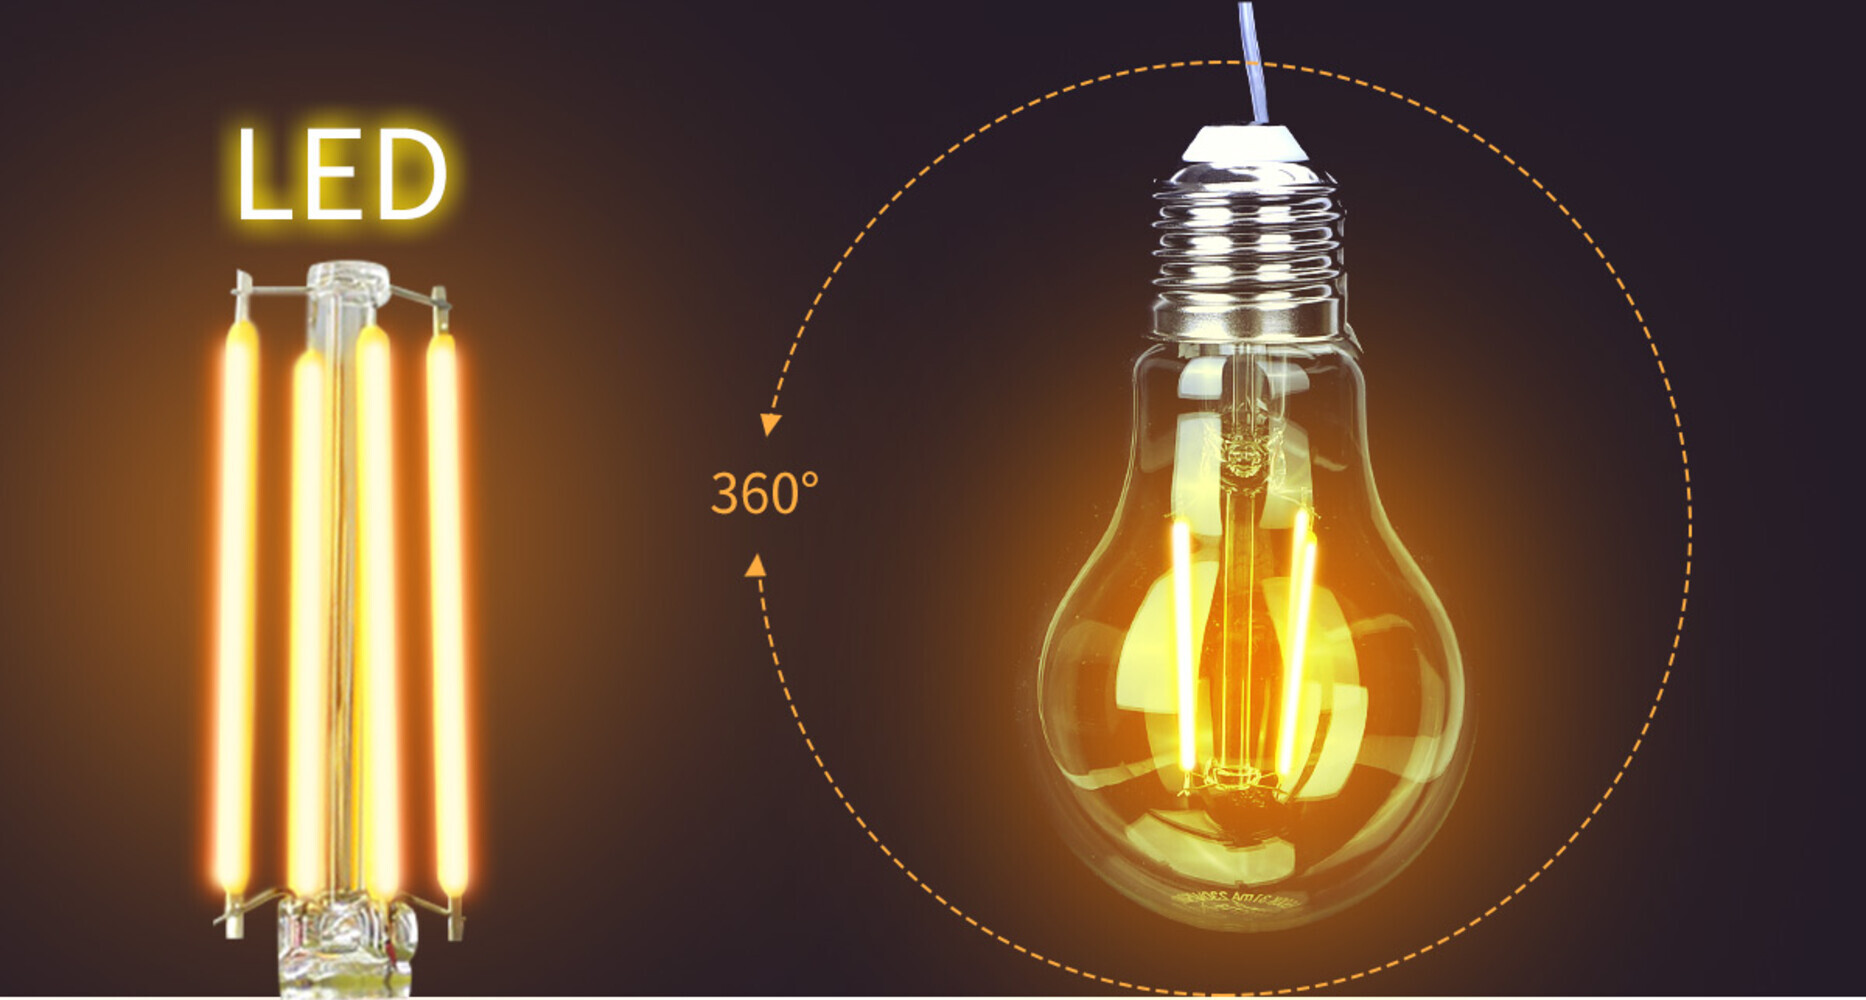 Hochwertiges LED Leuchtmittel von LED Universum mit Amber-Farbton und beeindruckender Lichtleistung